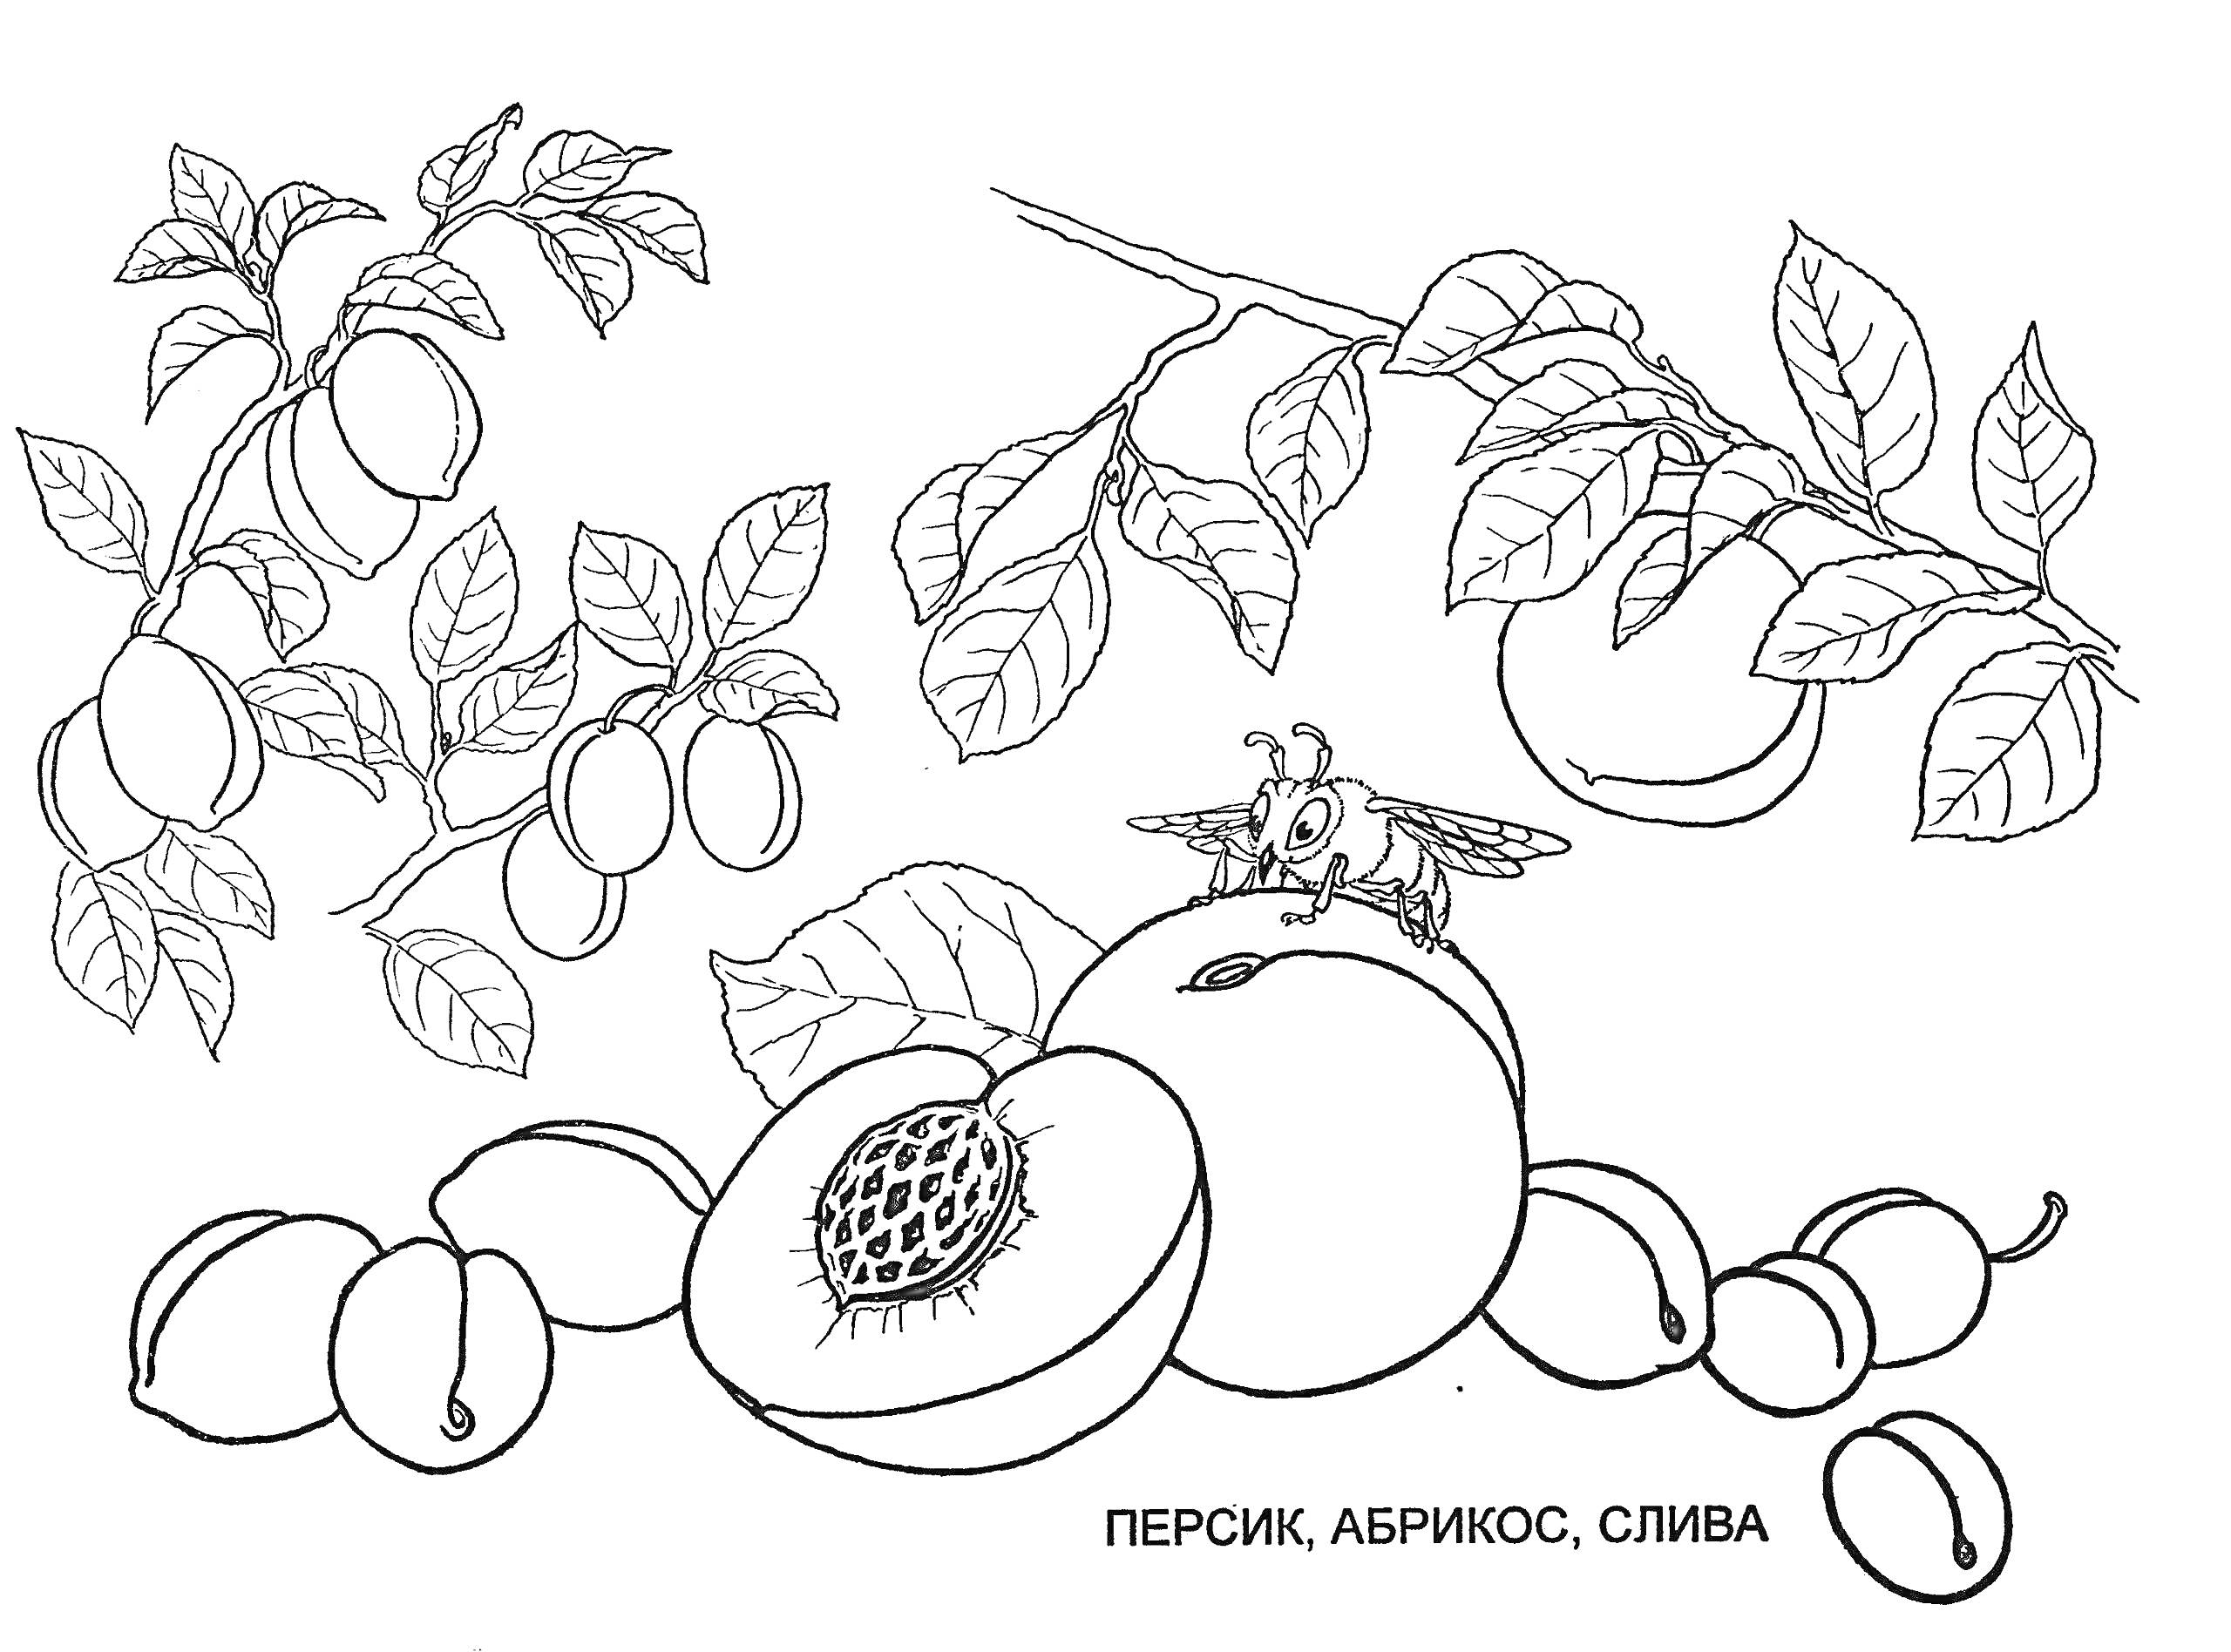 Раскраска Персик, абрикос, слива на ветке и слива на земле, разрезанный персик с косточкой, пчела на половинке персика